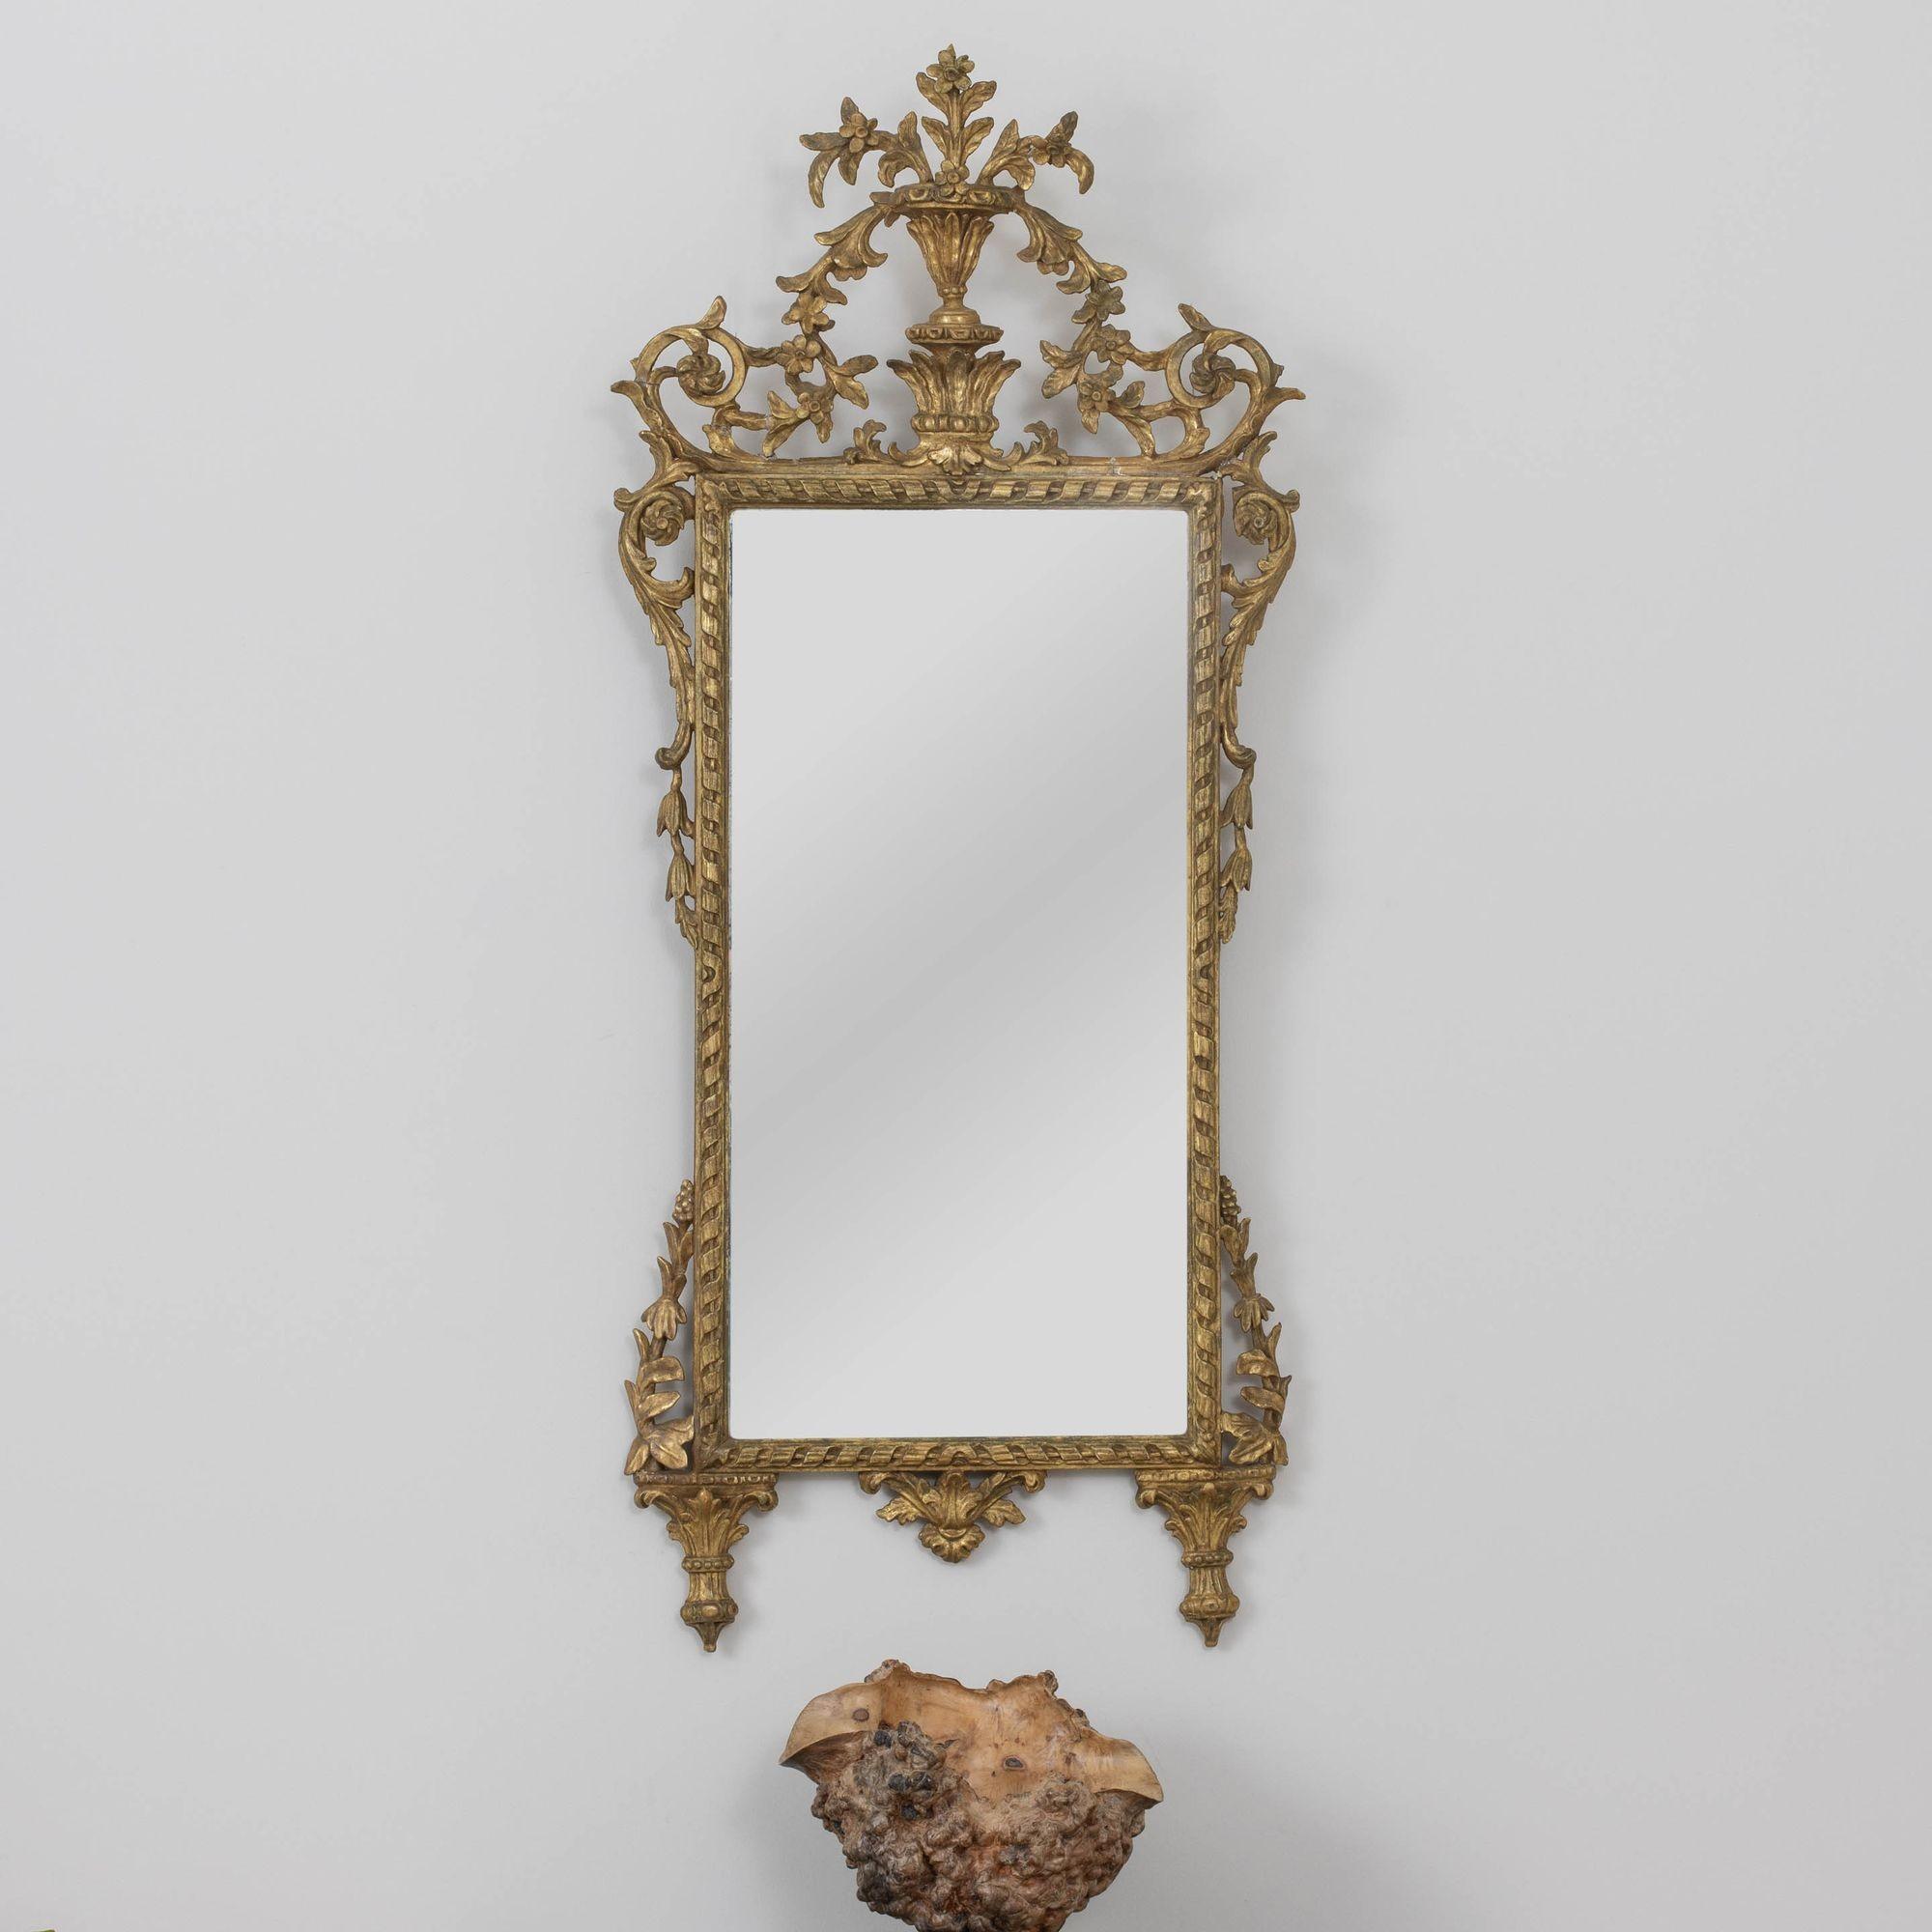 Ein eleganter, italienischer Spiegel, fein geschnitzt mit wunderschön gealtertem, originalem Vergoldungsholz und originaler Spiegelplatte. Geschnitzter Urnengiebel mit Blumen- und Blattmotiv.